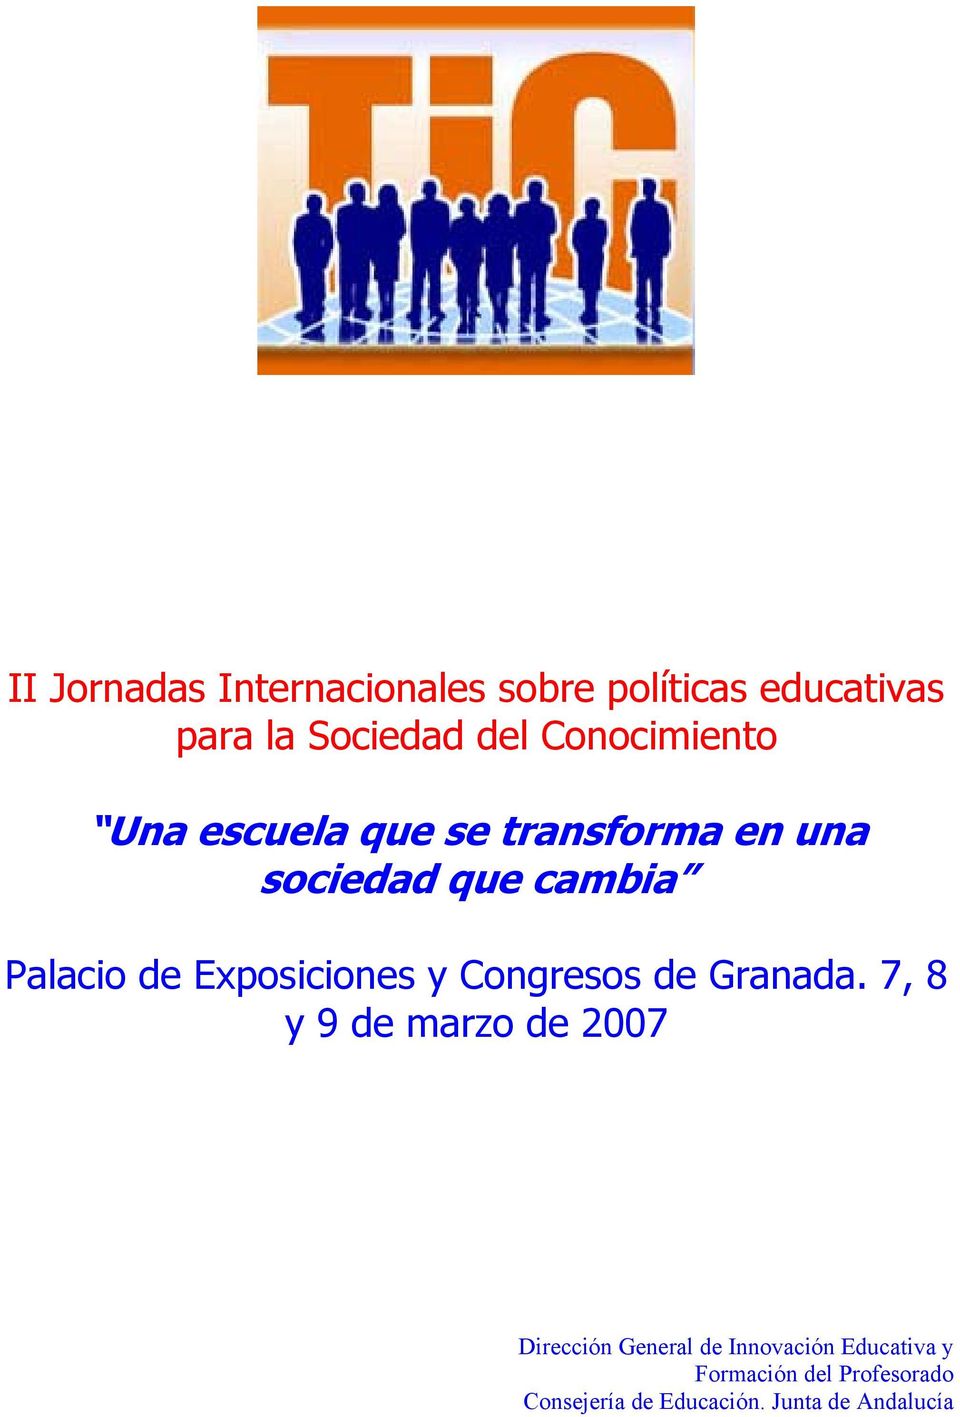 Exposiciones y Congresos de Granada.